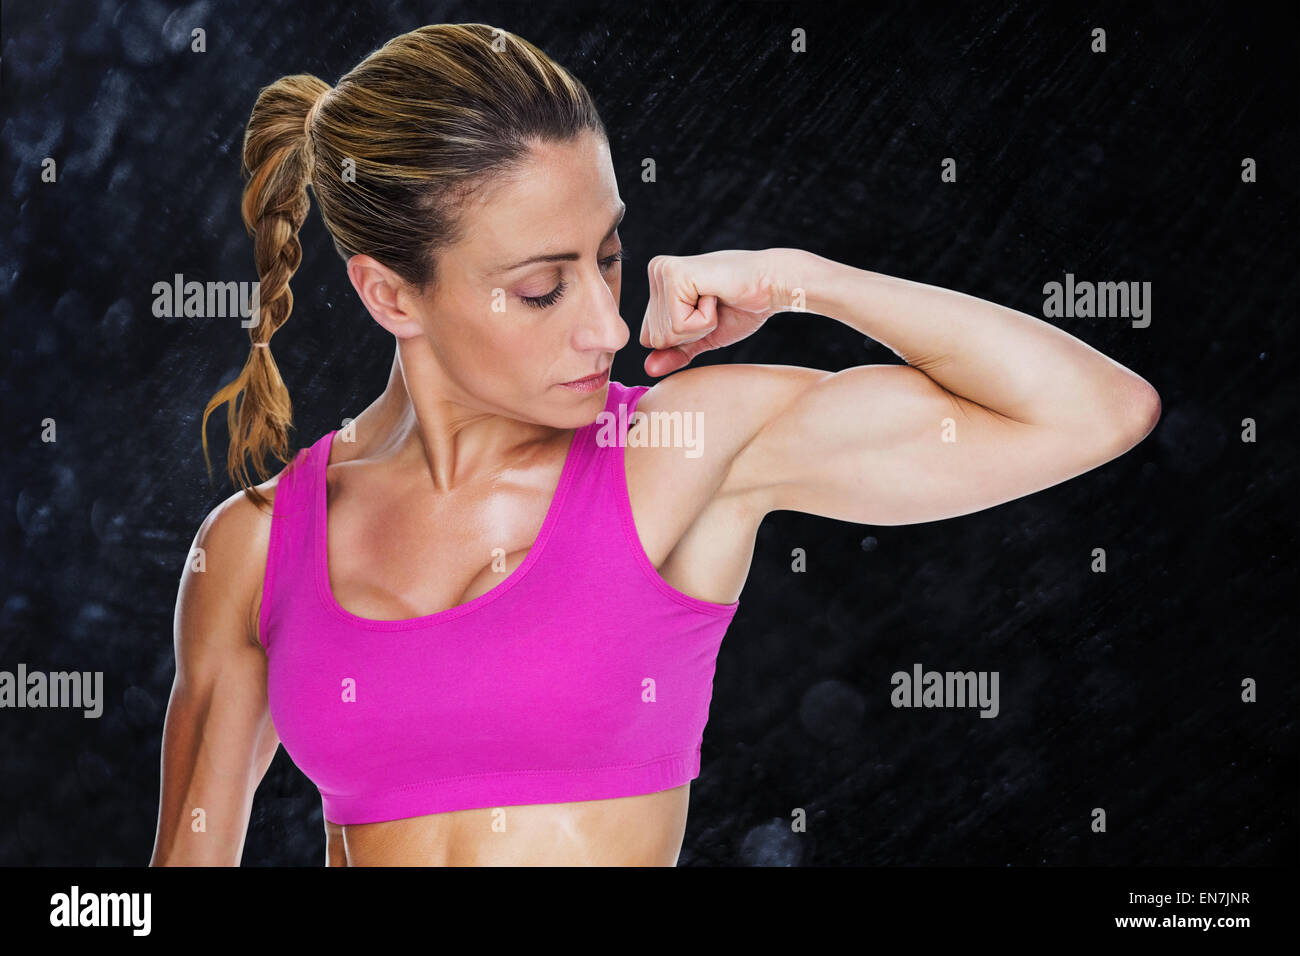 Immagine composita di bodybuilder femminile flessione bicipite in rosa reggiseno per lo sport Foto Stock